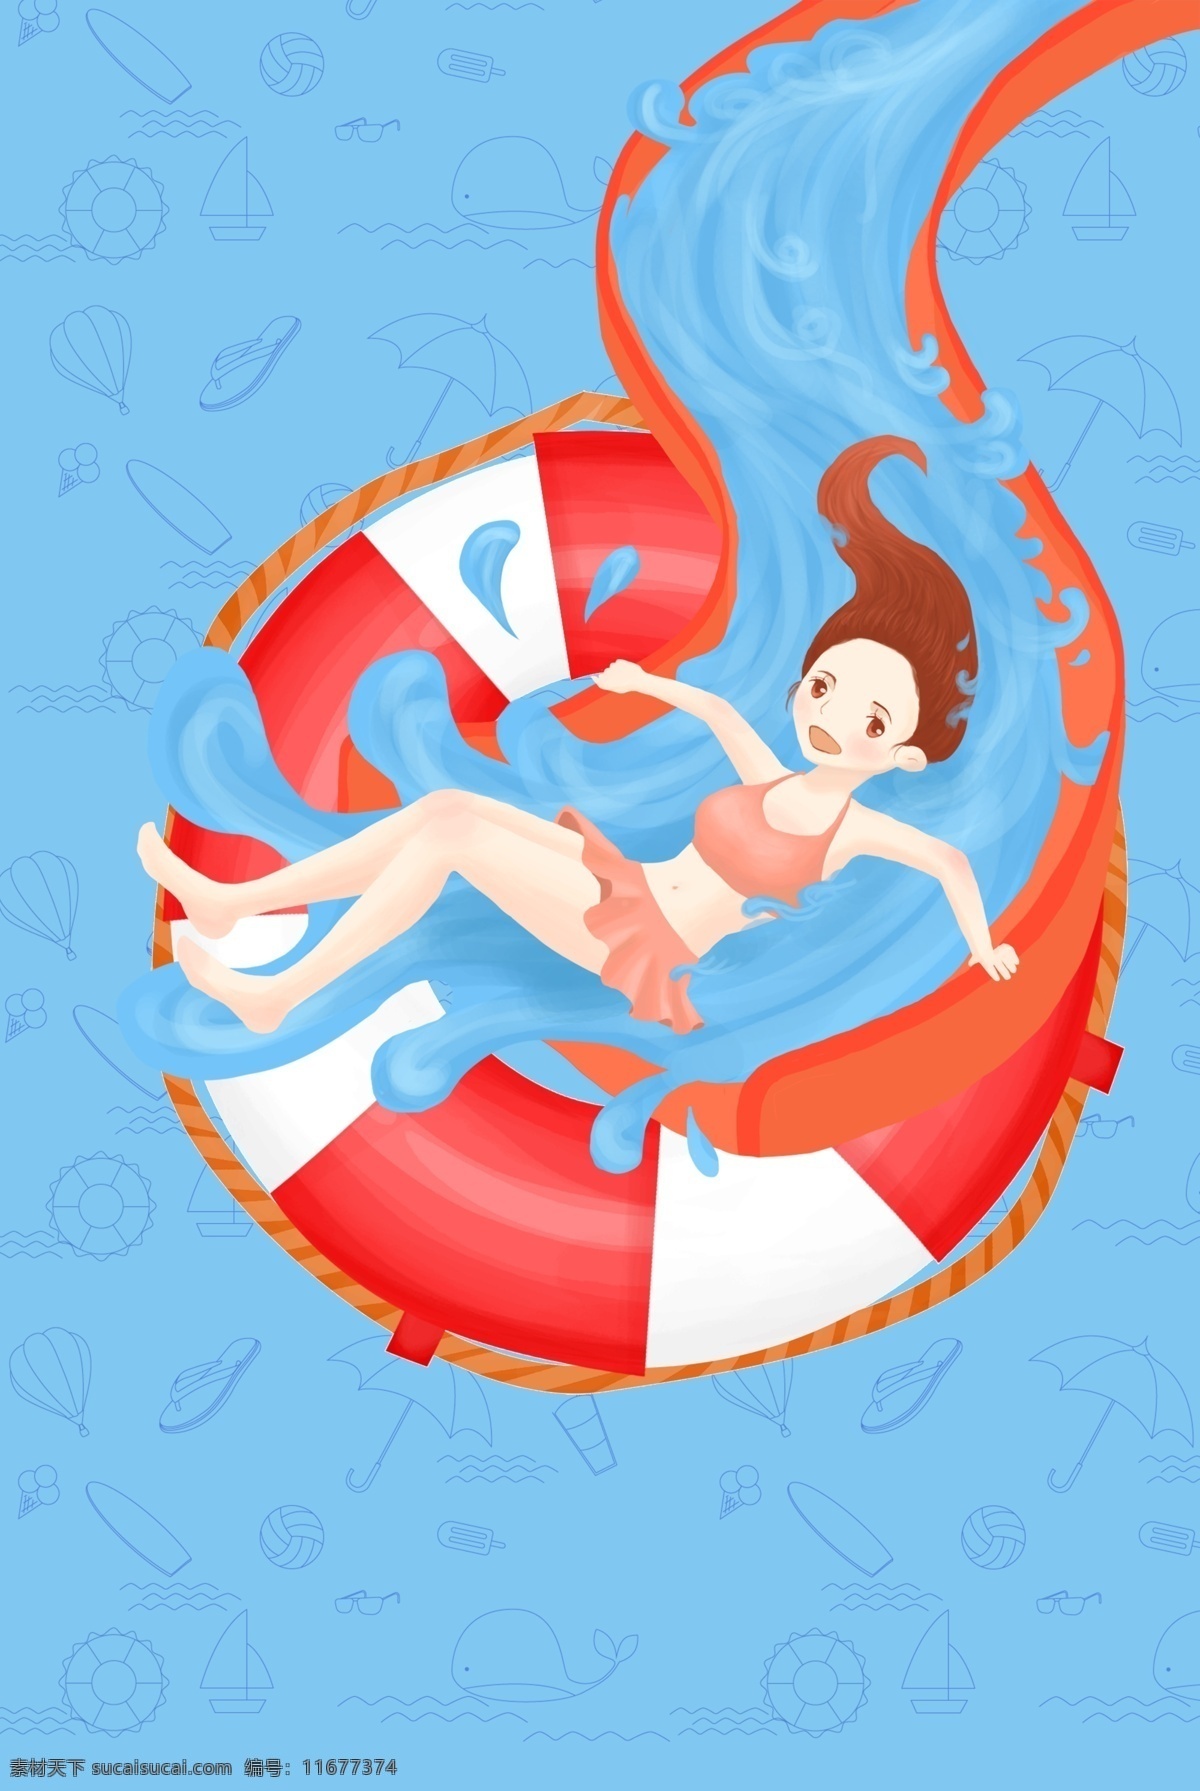 卡通 手绘 红蓝 夏日 水上乐园 滑梯 救生圈 海报 背 降暑 避暑 海报背景